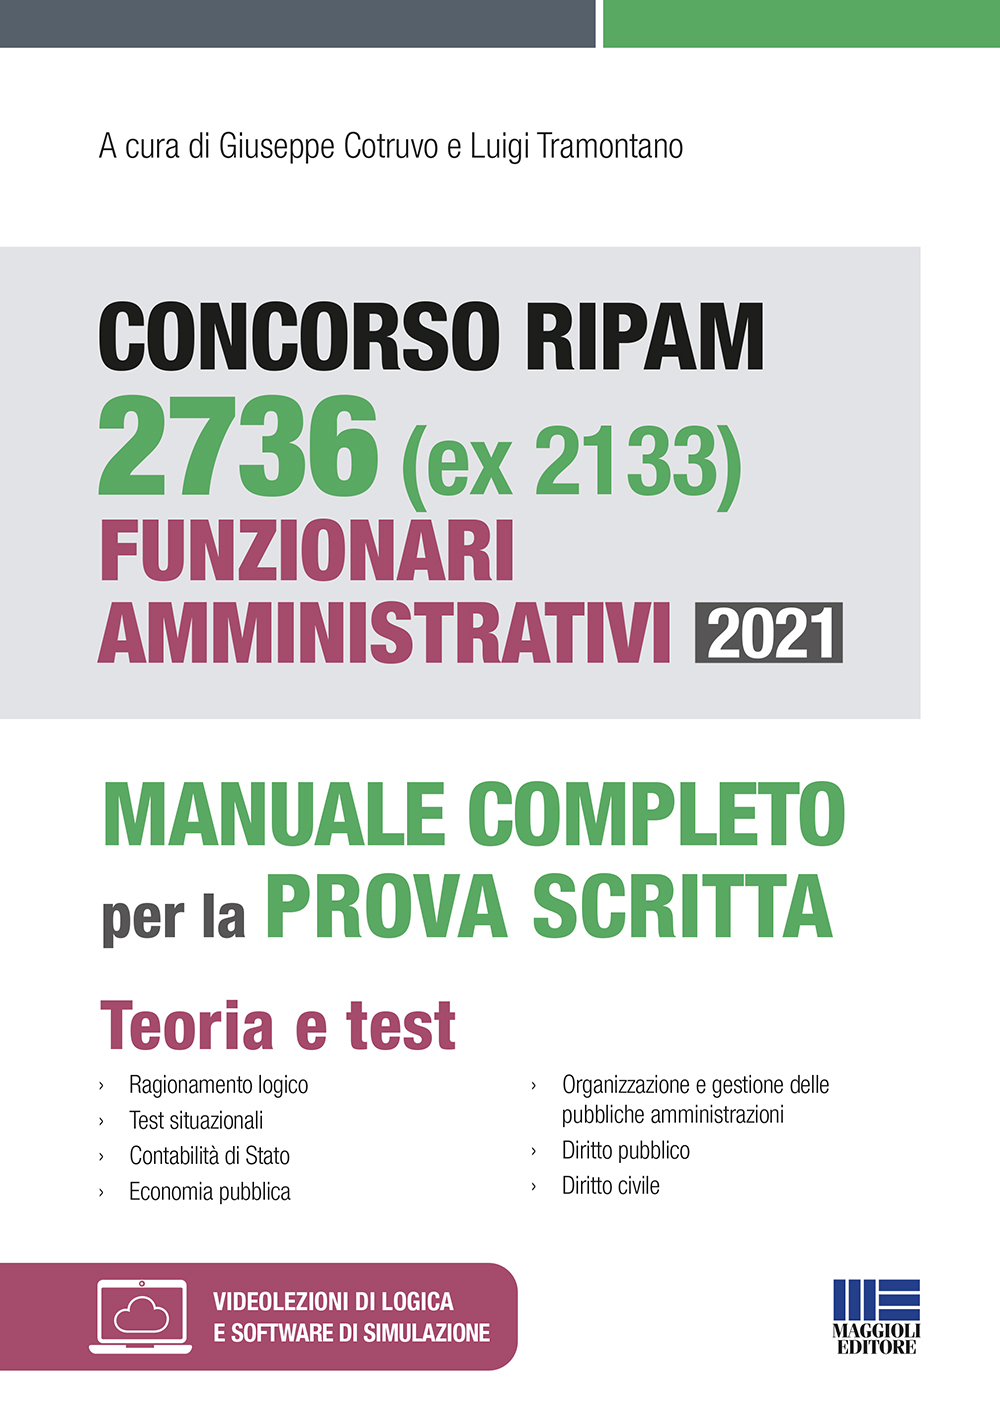 Concorso RIPAM 2736 (ex 2133) Funzionari amministrativi 2021 - Manuale completo per la prova scritta 